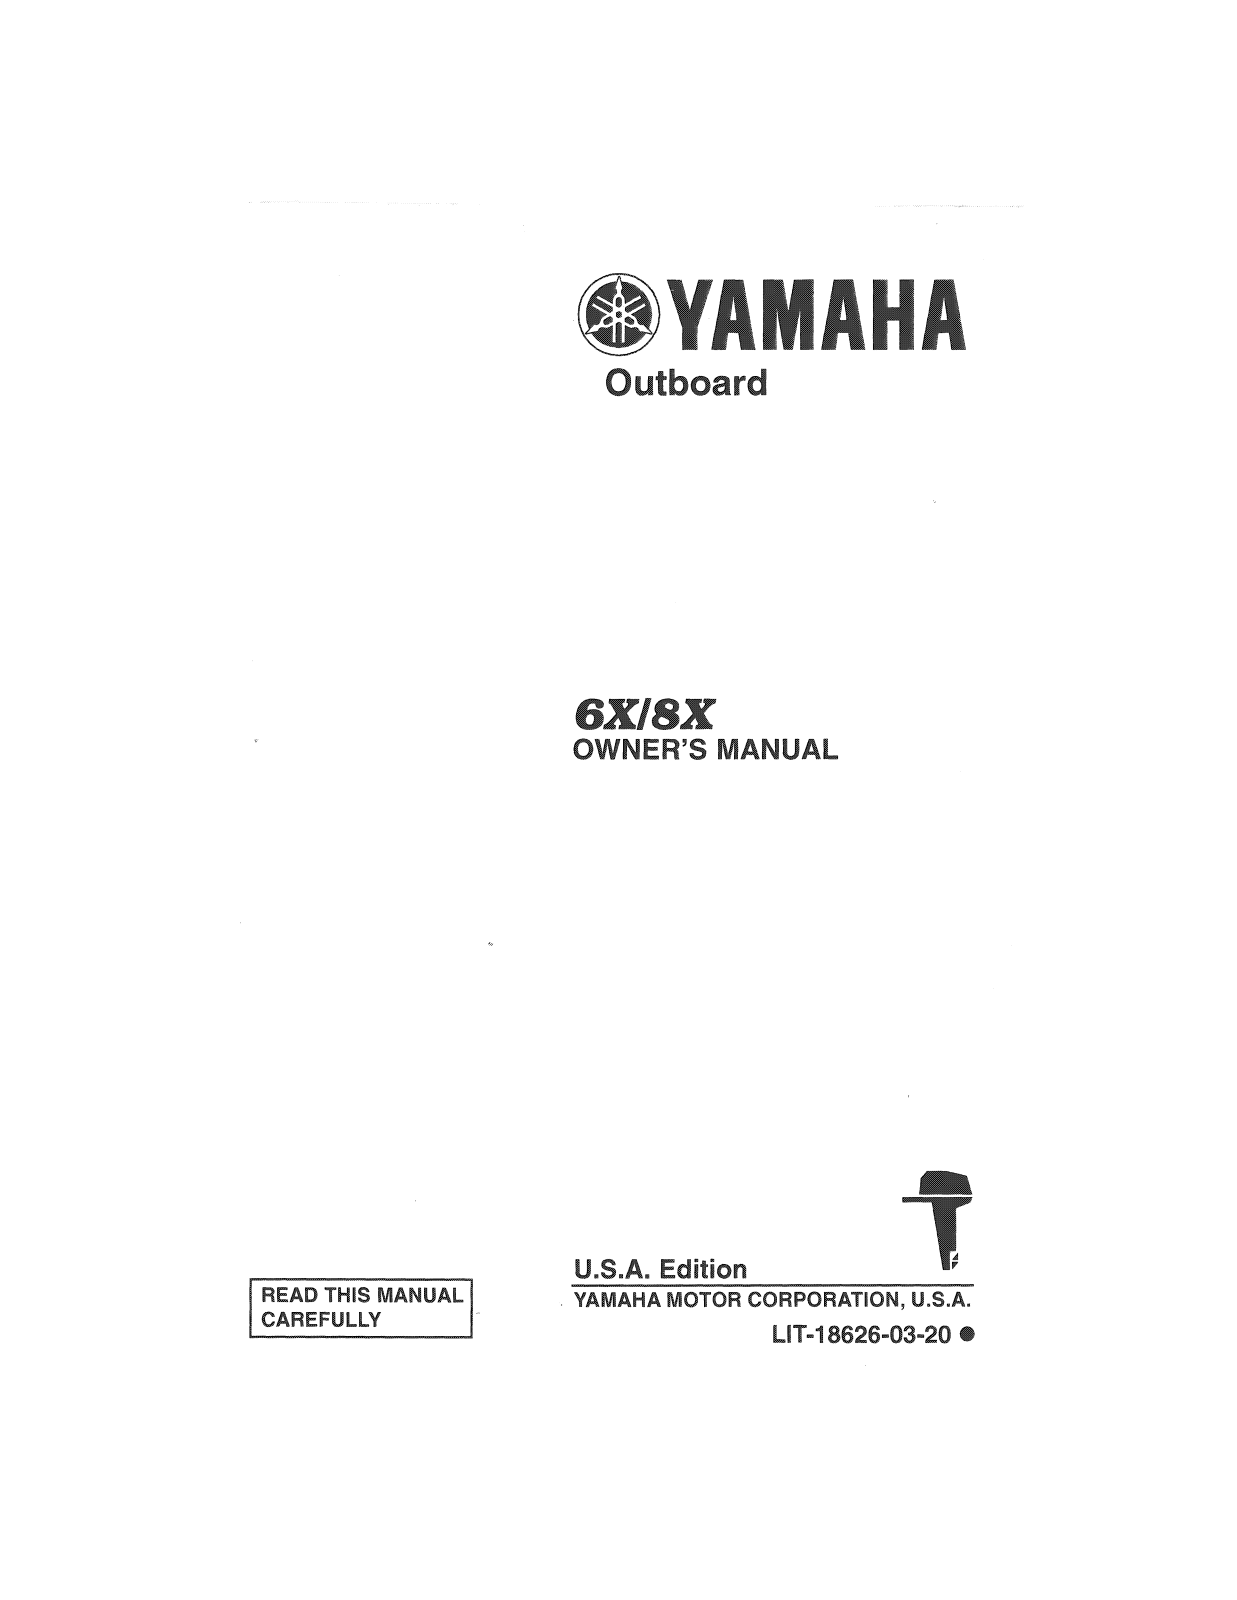 Yamaha 6X, 8X Manual